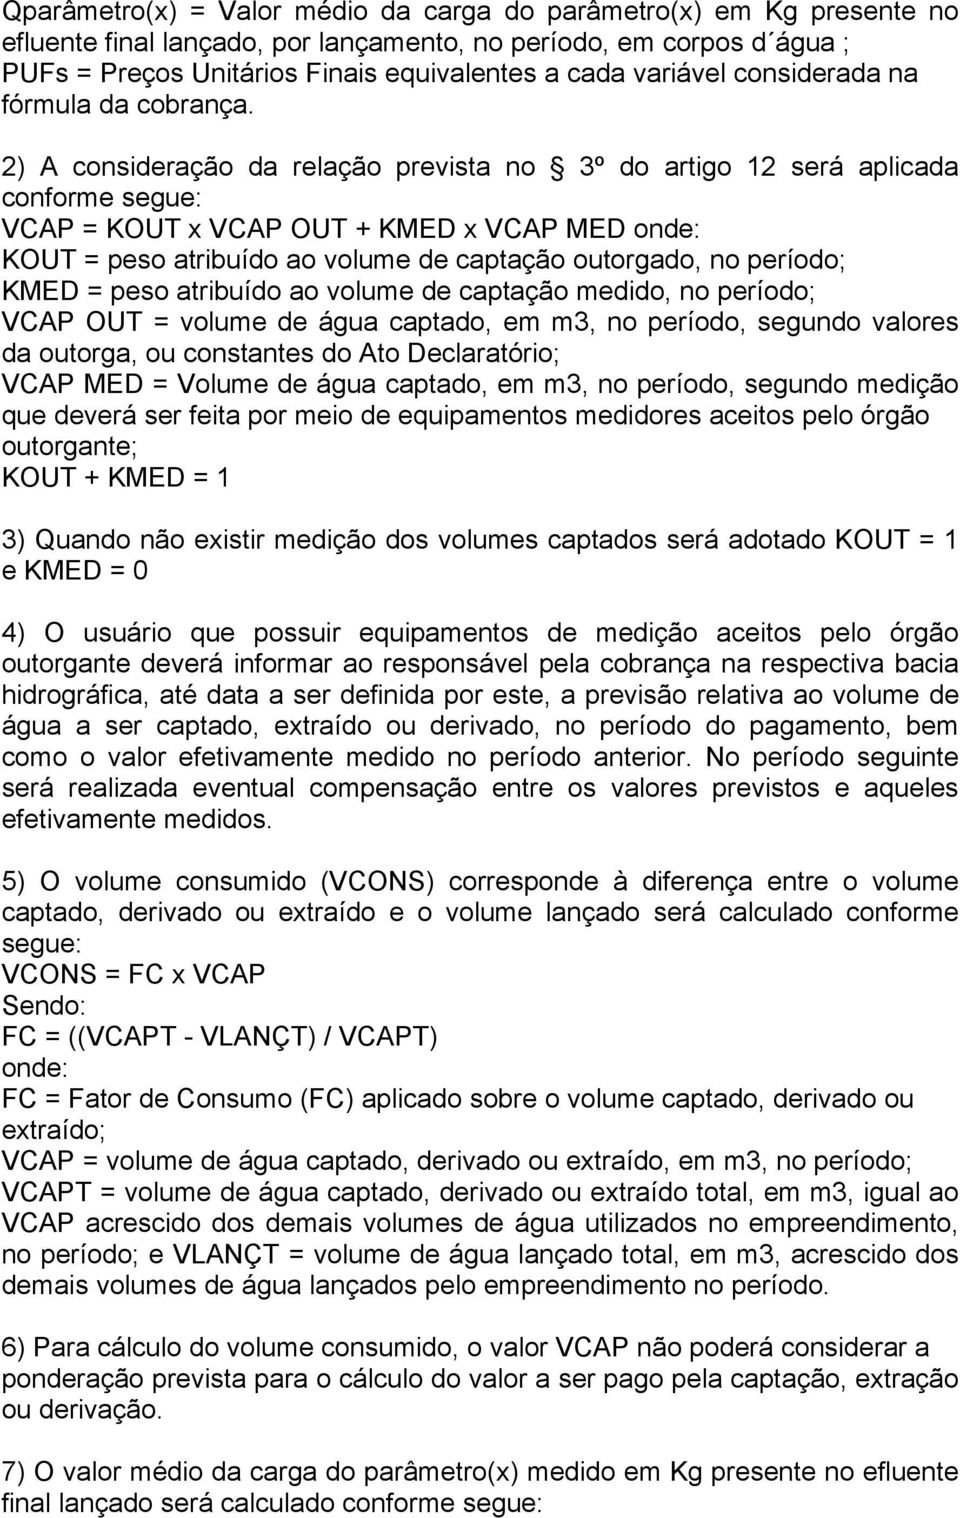 2) A consideração da relação prevista no 3º do artigo 12 será aplicada conforme segue: VCAP = KOUT x VCAP OUT + KMED x VCAP MED onde: KOUT = peso atribuído ao volume de captação outorgado, no